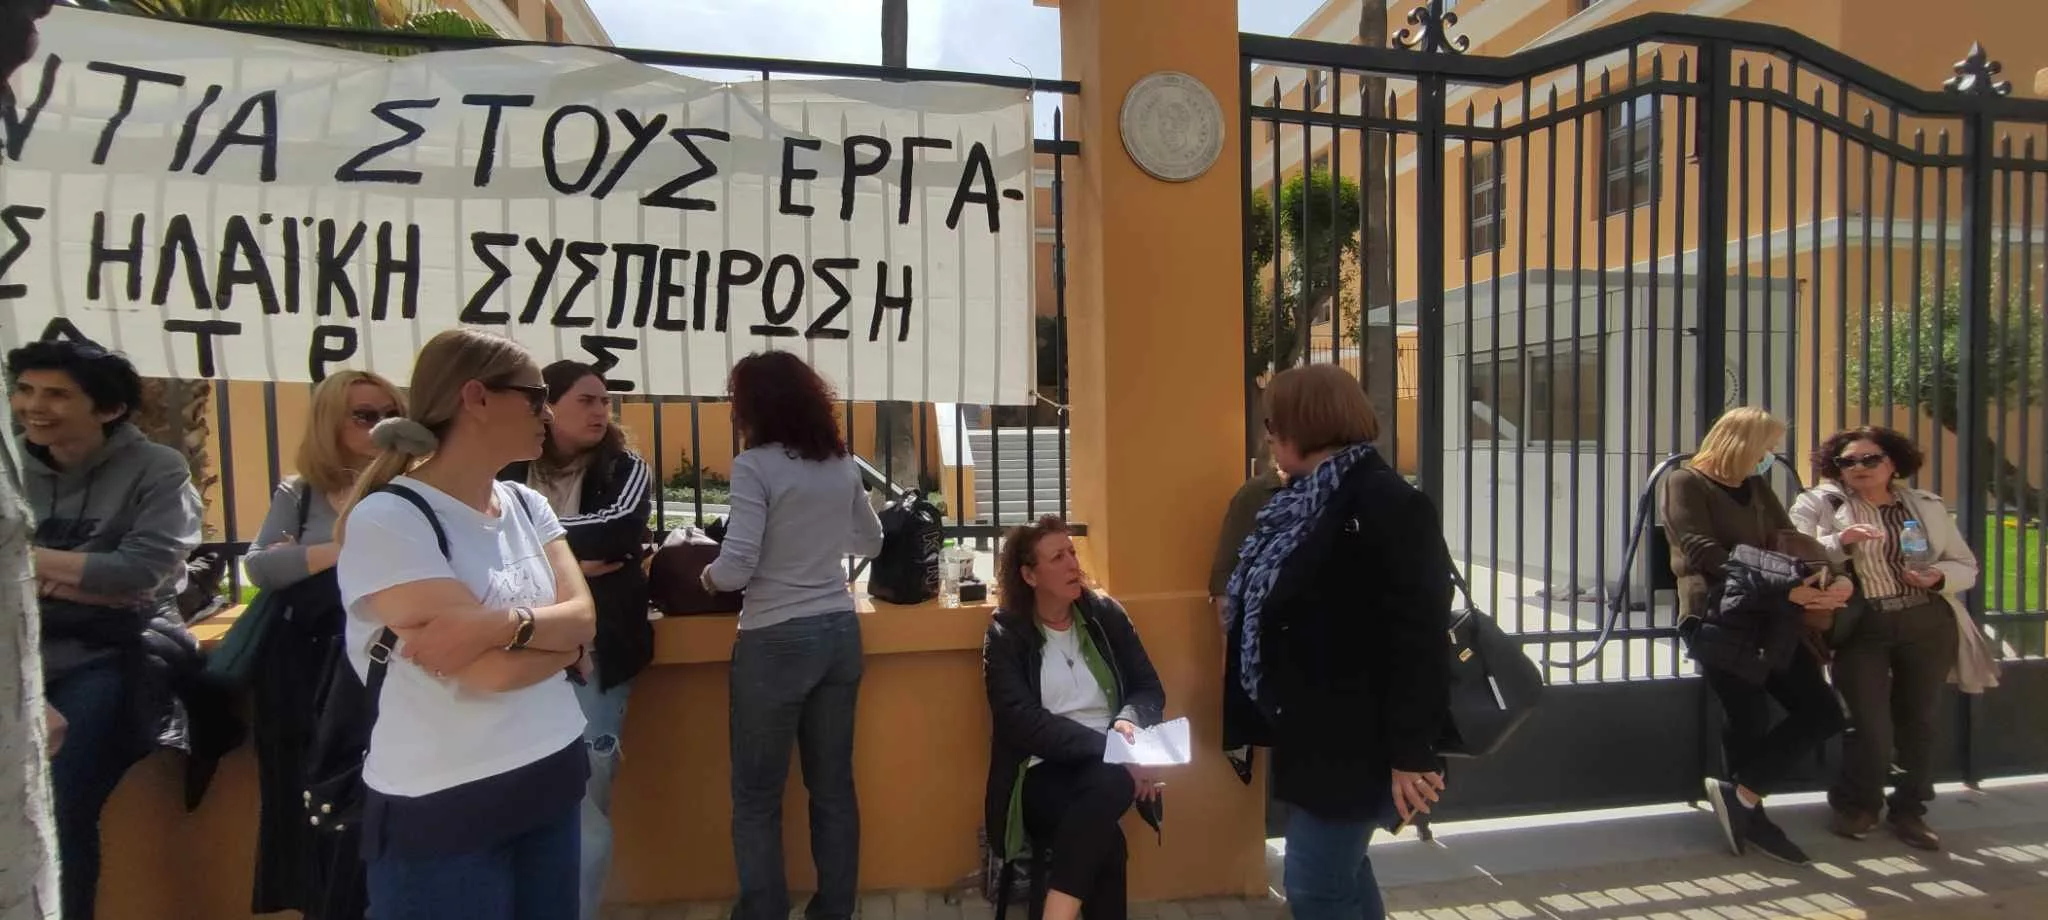 Πάτρα - Κατάληψη Δημαρχείου: Επικοινωνιακό ντεμαράζ από το Δήμο για αλλαγή ατζέντας